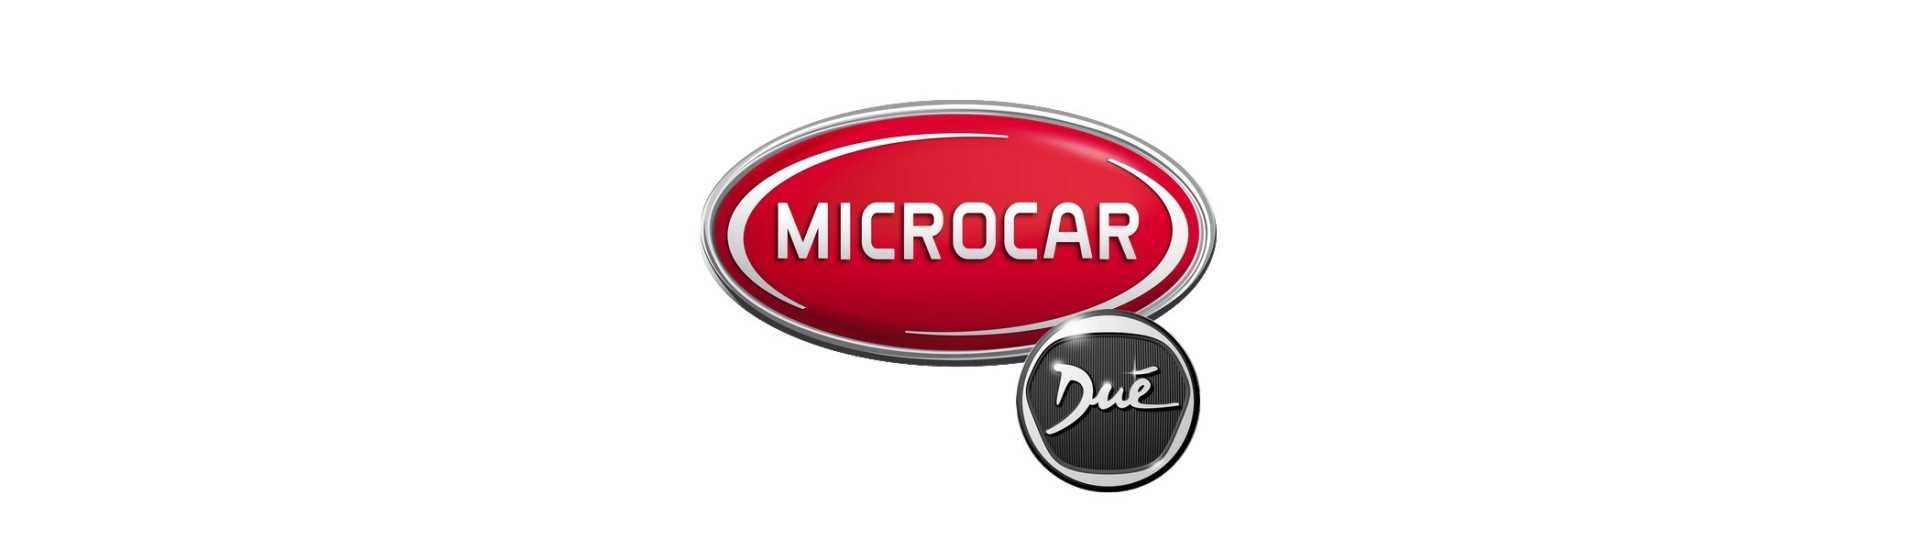 Hiljainen lohko parhaaseen hintaan ilman lisenssiä Microcar Dué